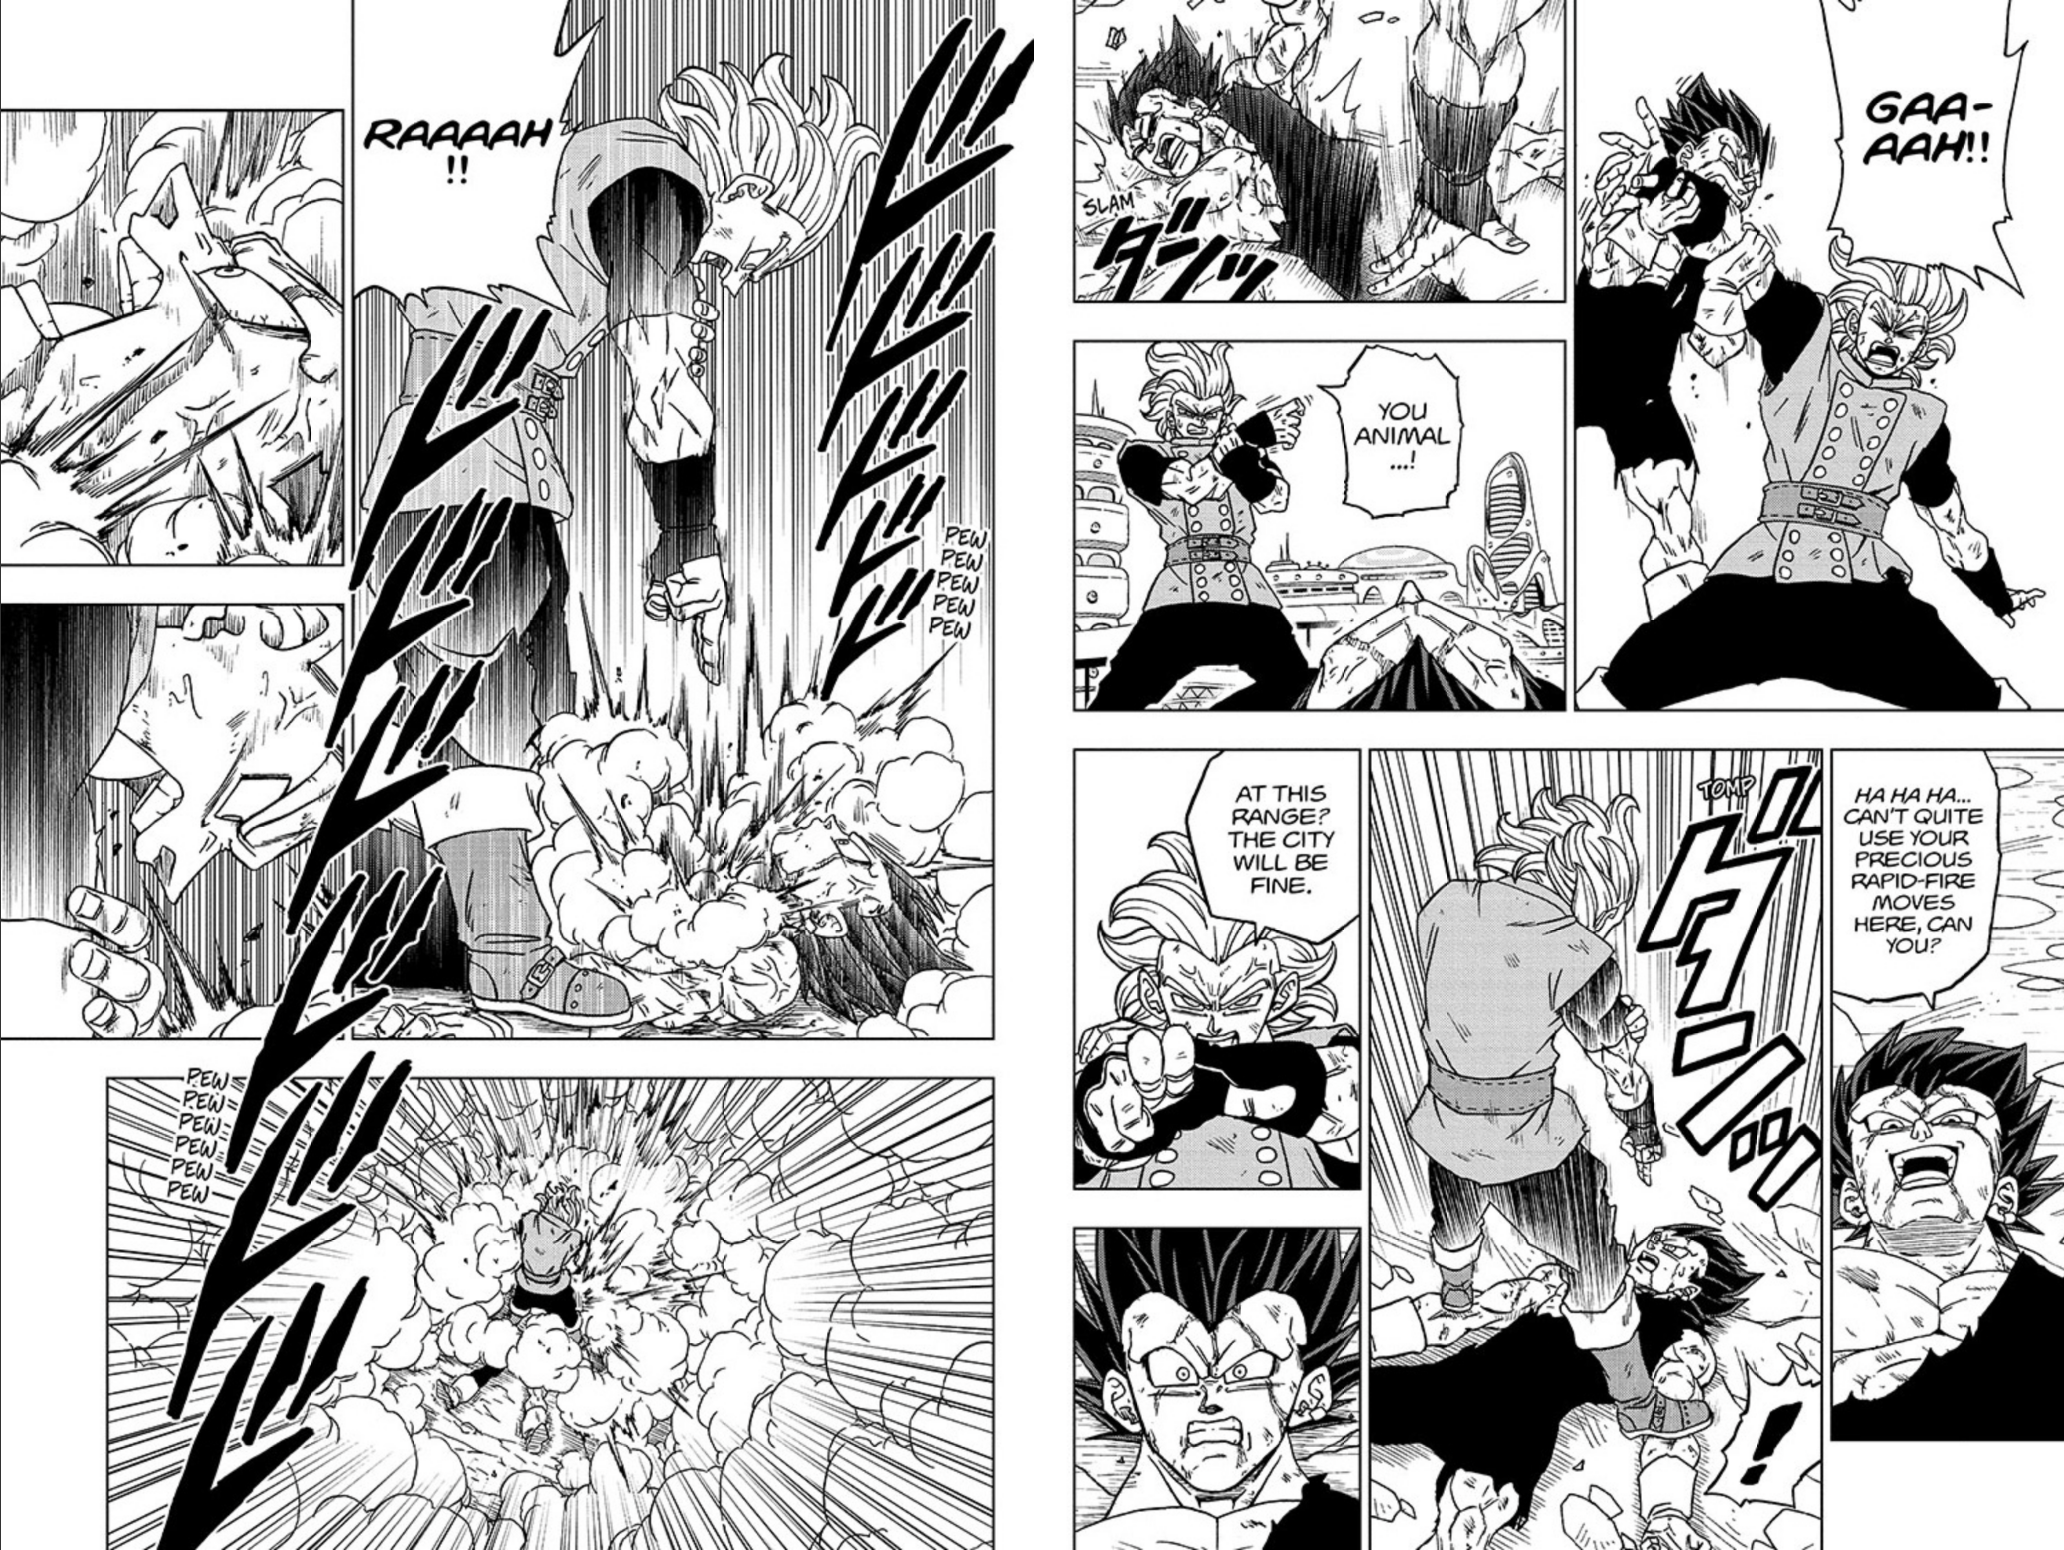 Dragon Ball Super Chapter 76 image by Akira Toriyama and Toyotarou.